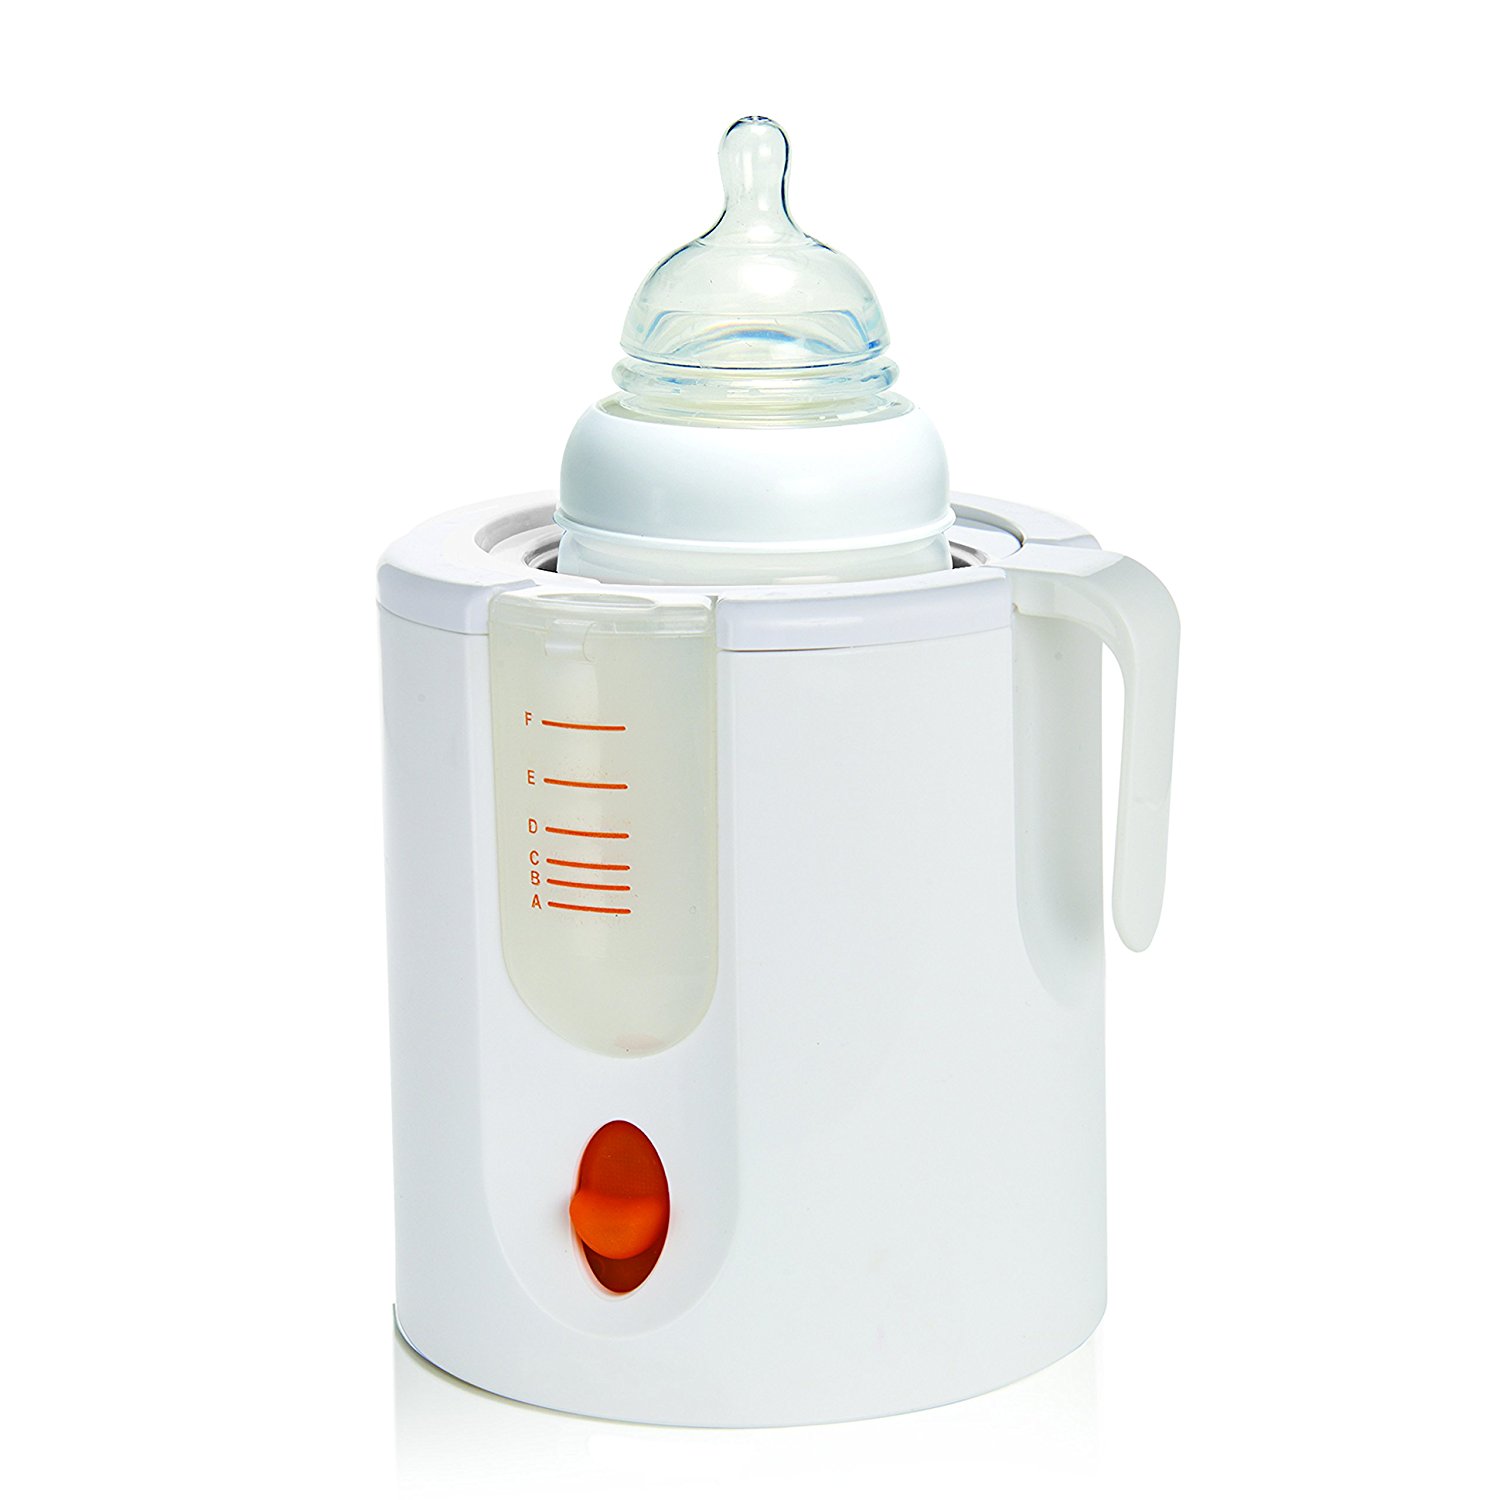 hot water dispenser for baby bottles